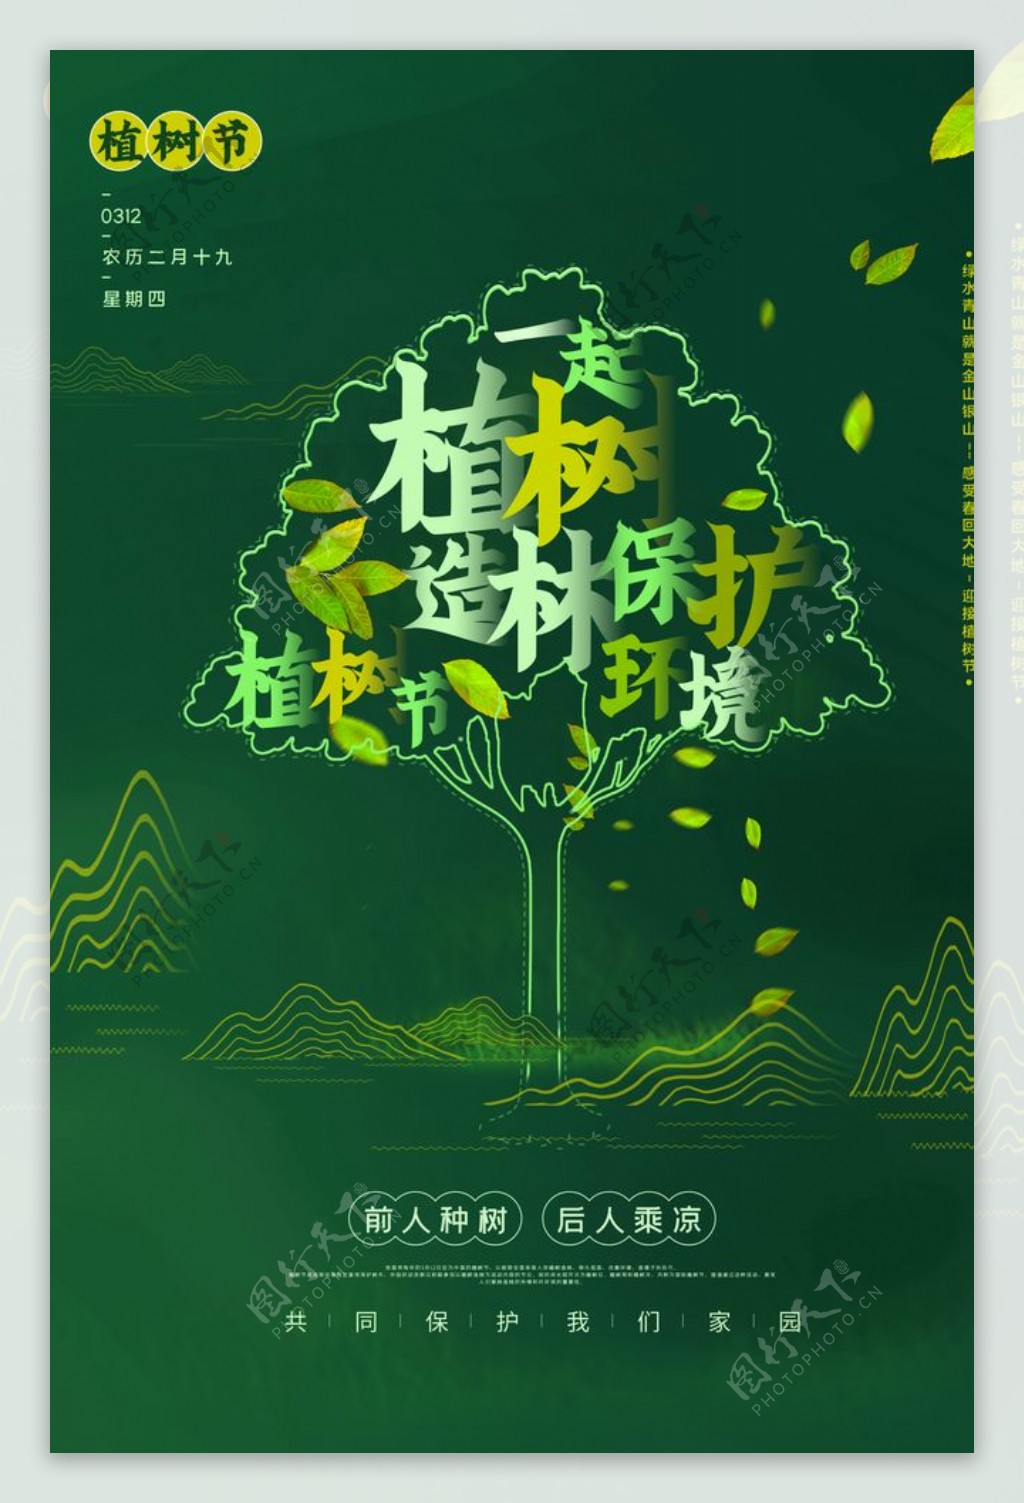 植树节社会公益宣传活动海报